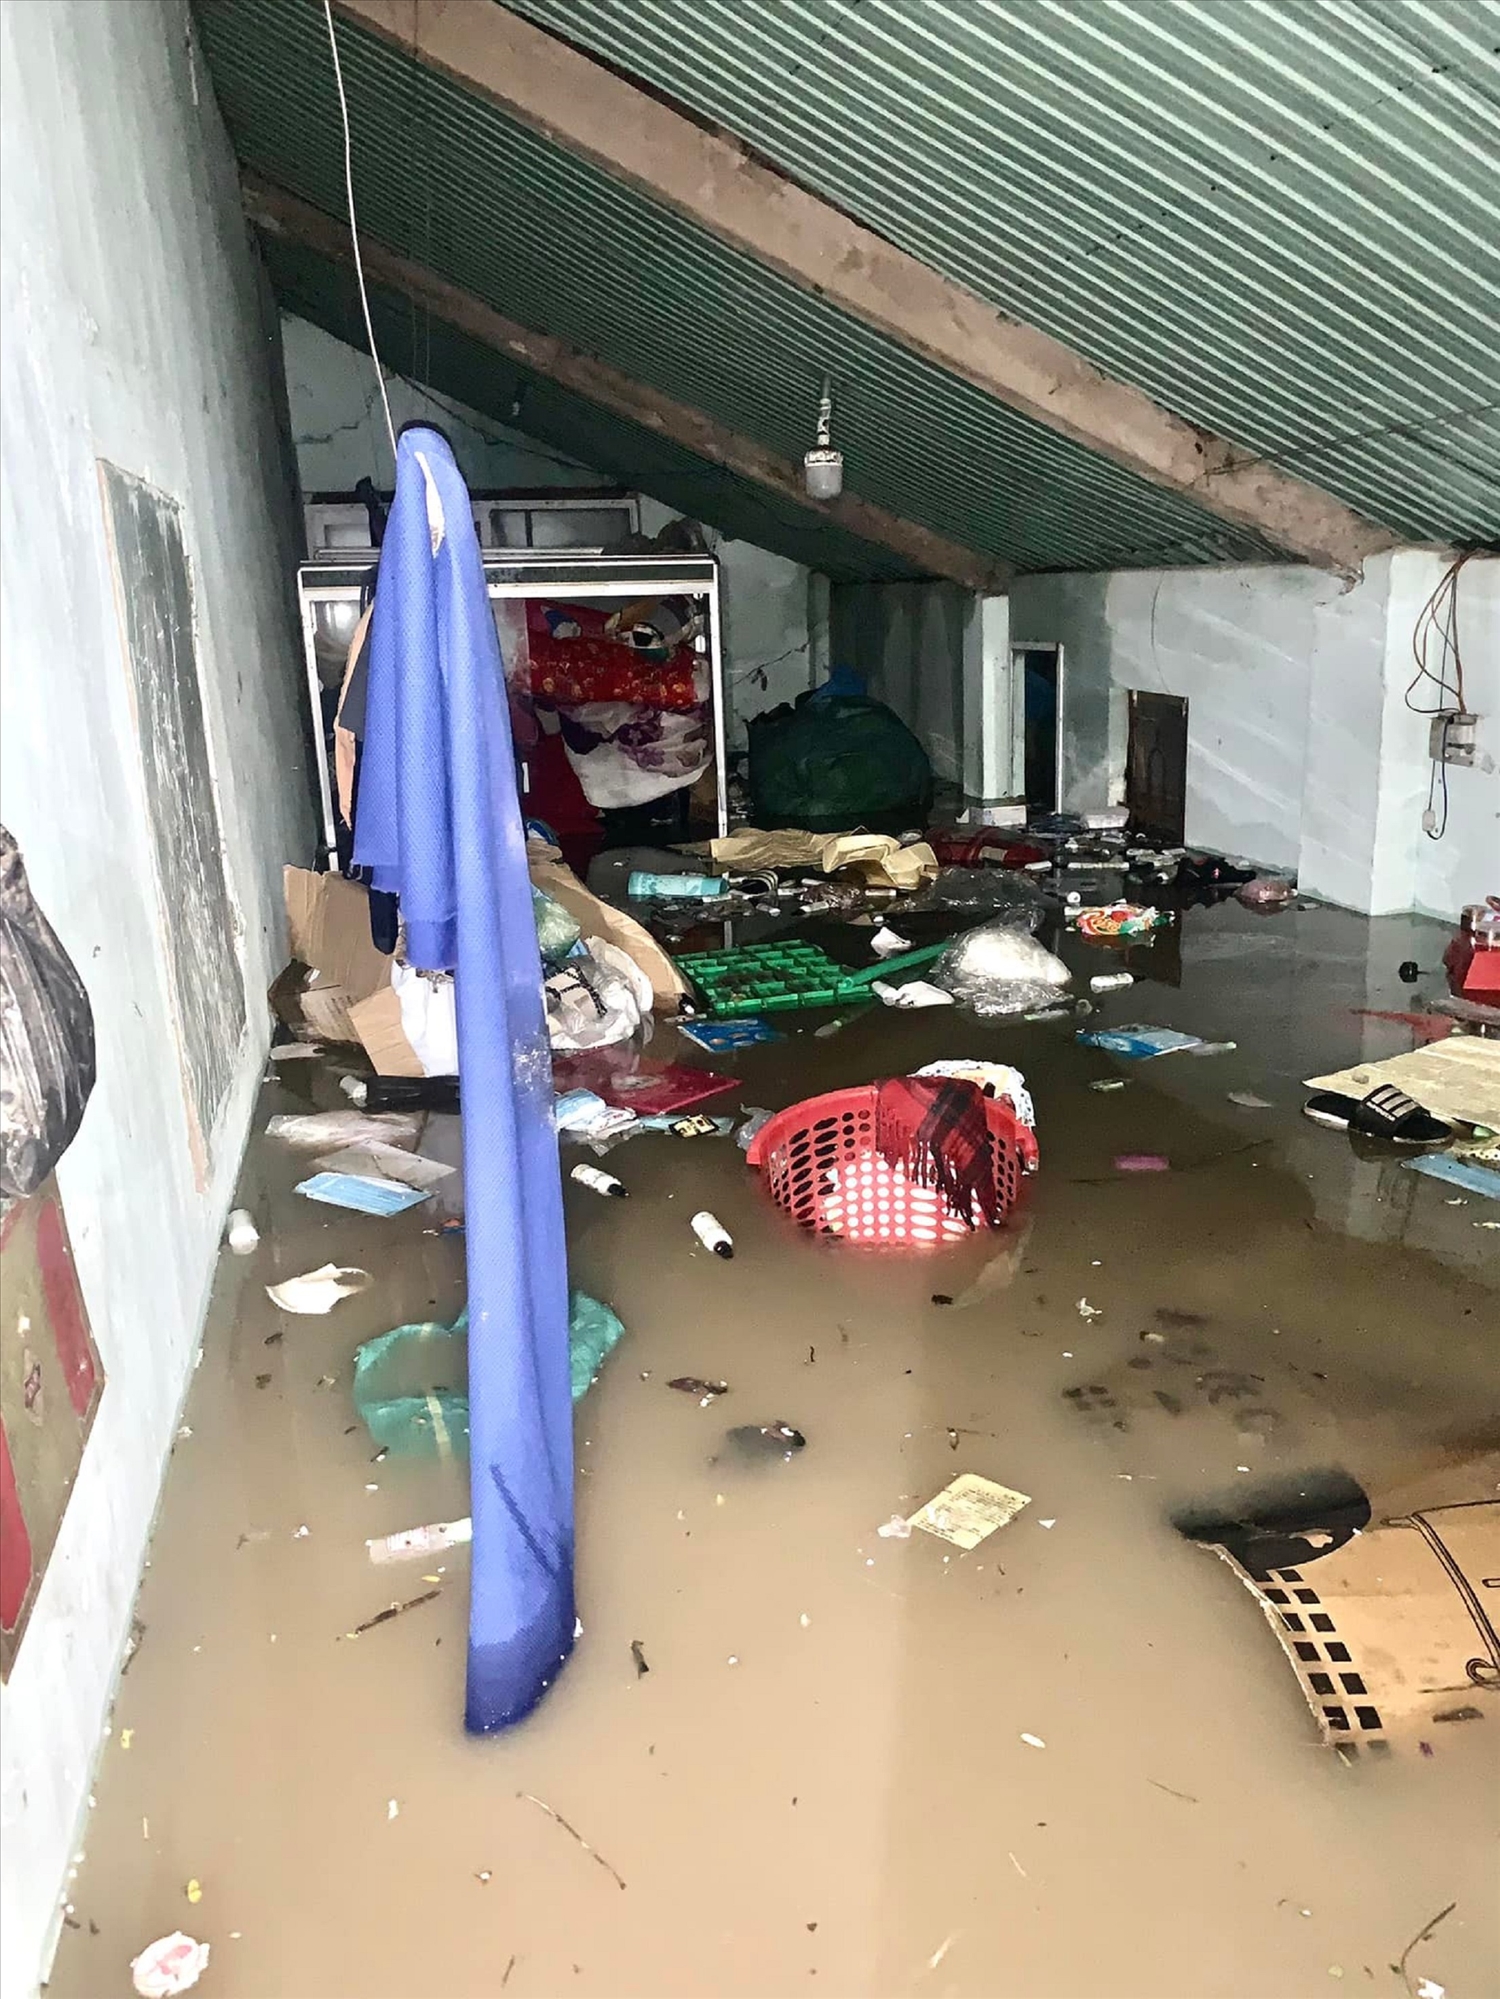  Hằng chục ngàn ngôi nhà trên địa bàn vùng thấp tỉnh Phú Yên bị ngập sâu trong nước (Ảnh chụp ngày 30/11/2021)